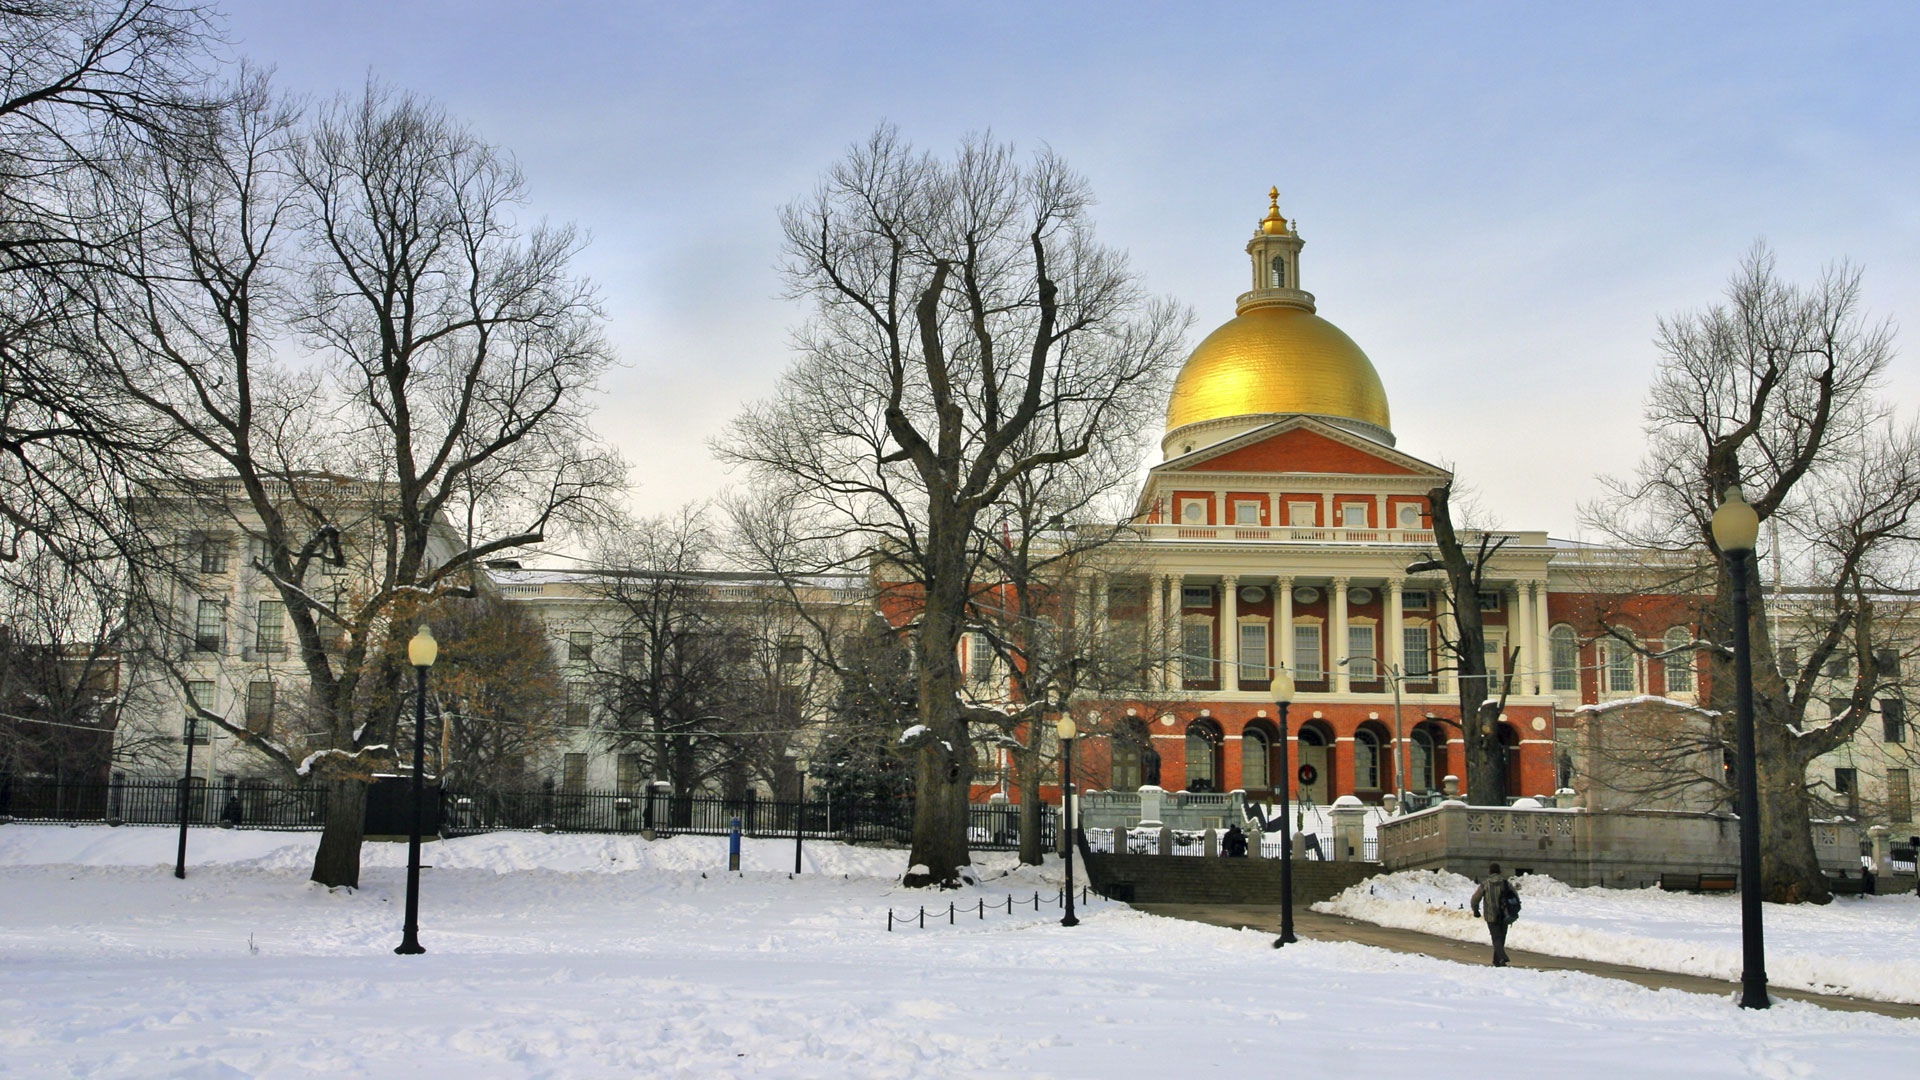 Boston snow